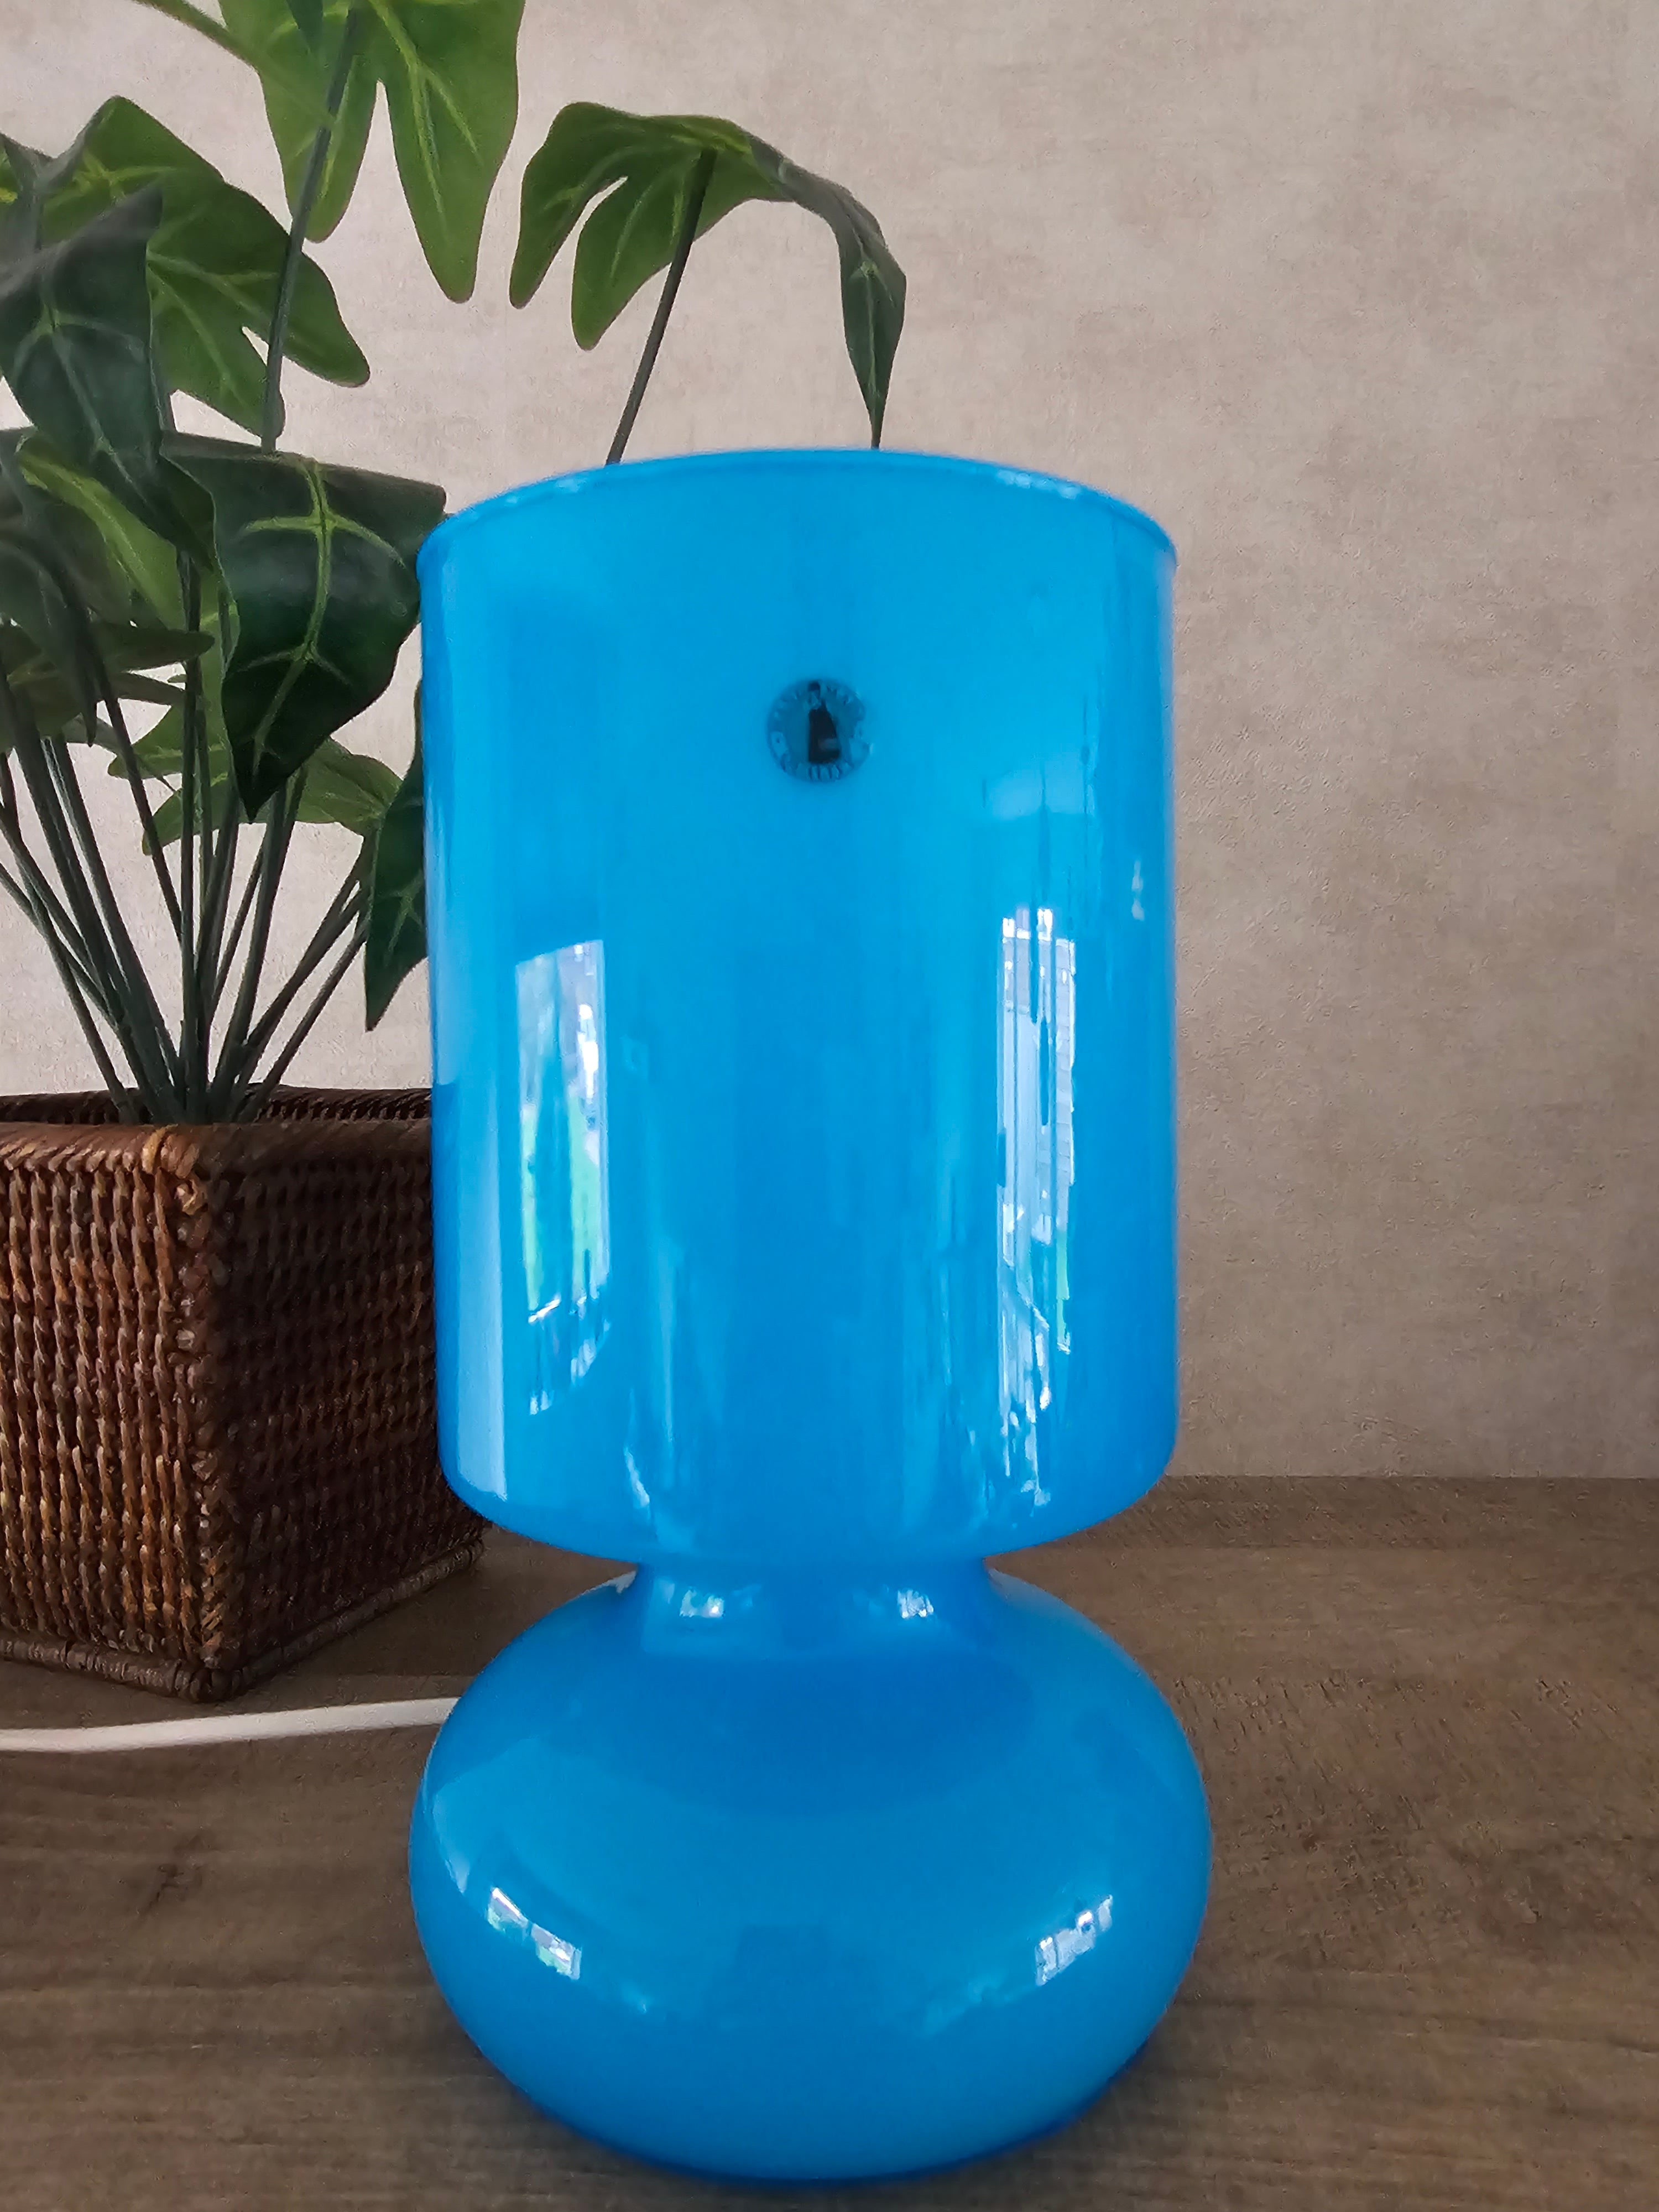 Ikea Lykta blauwe glazen lamp mushroomlamp